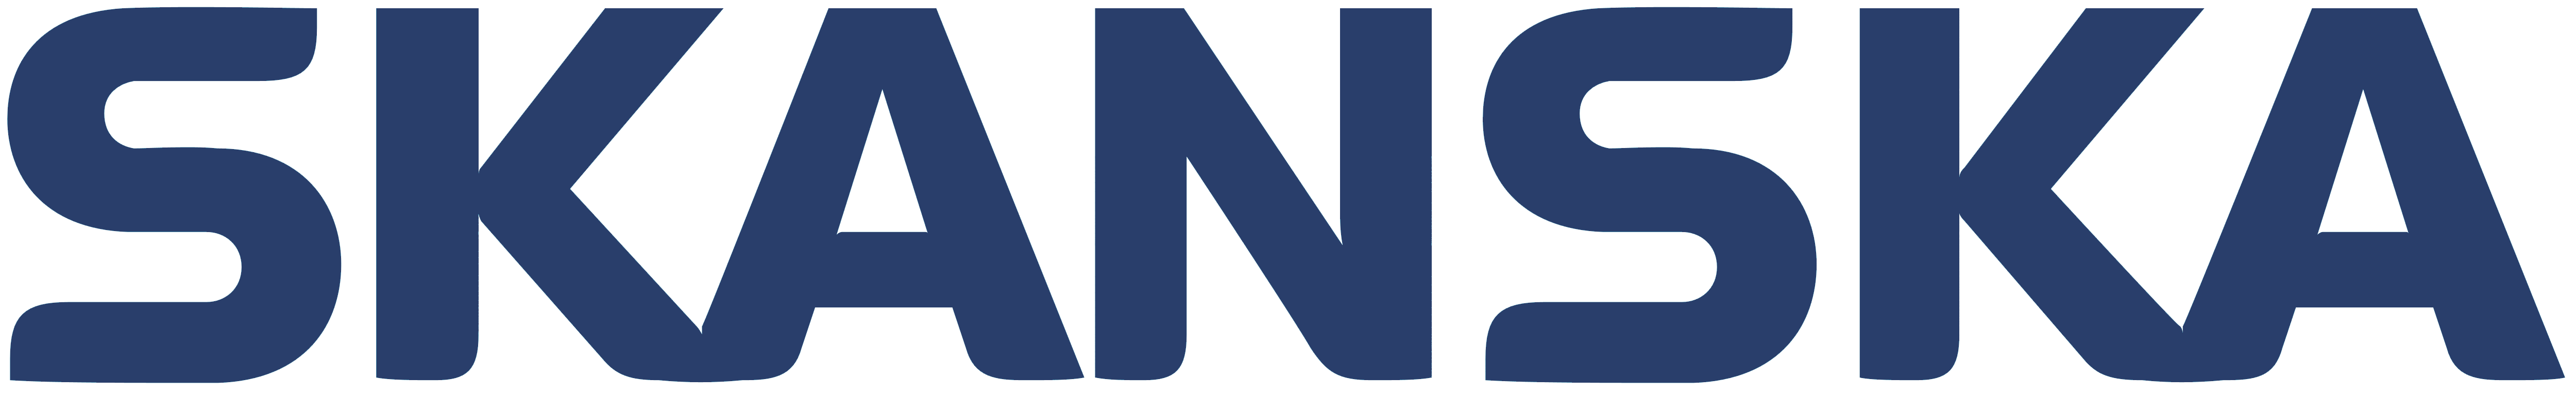 Skanska_logo